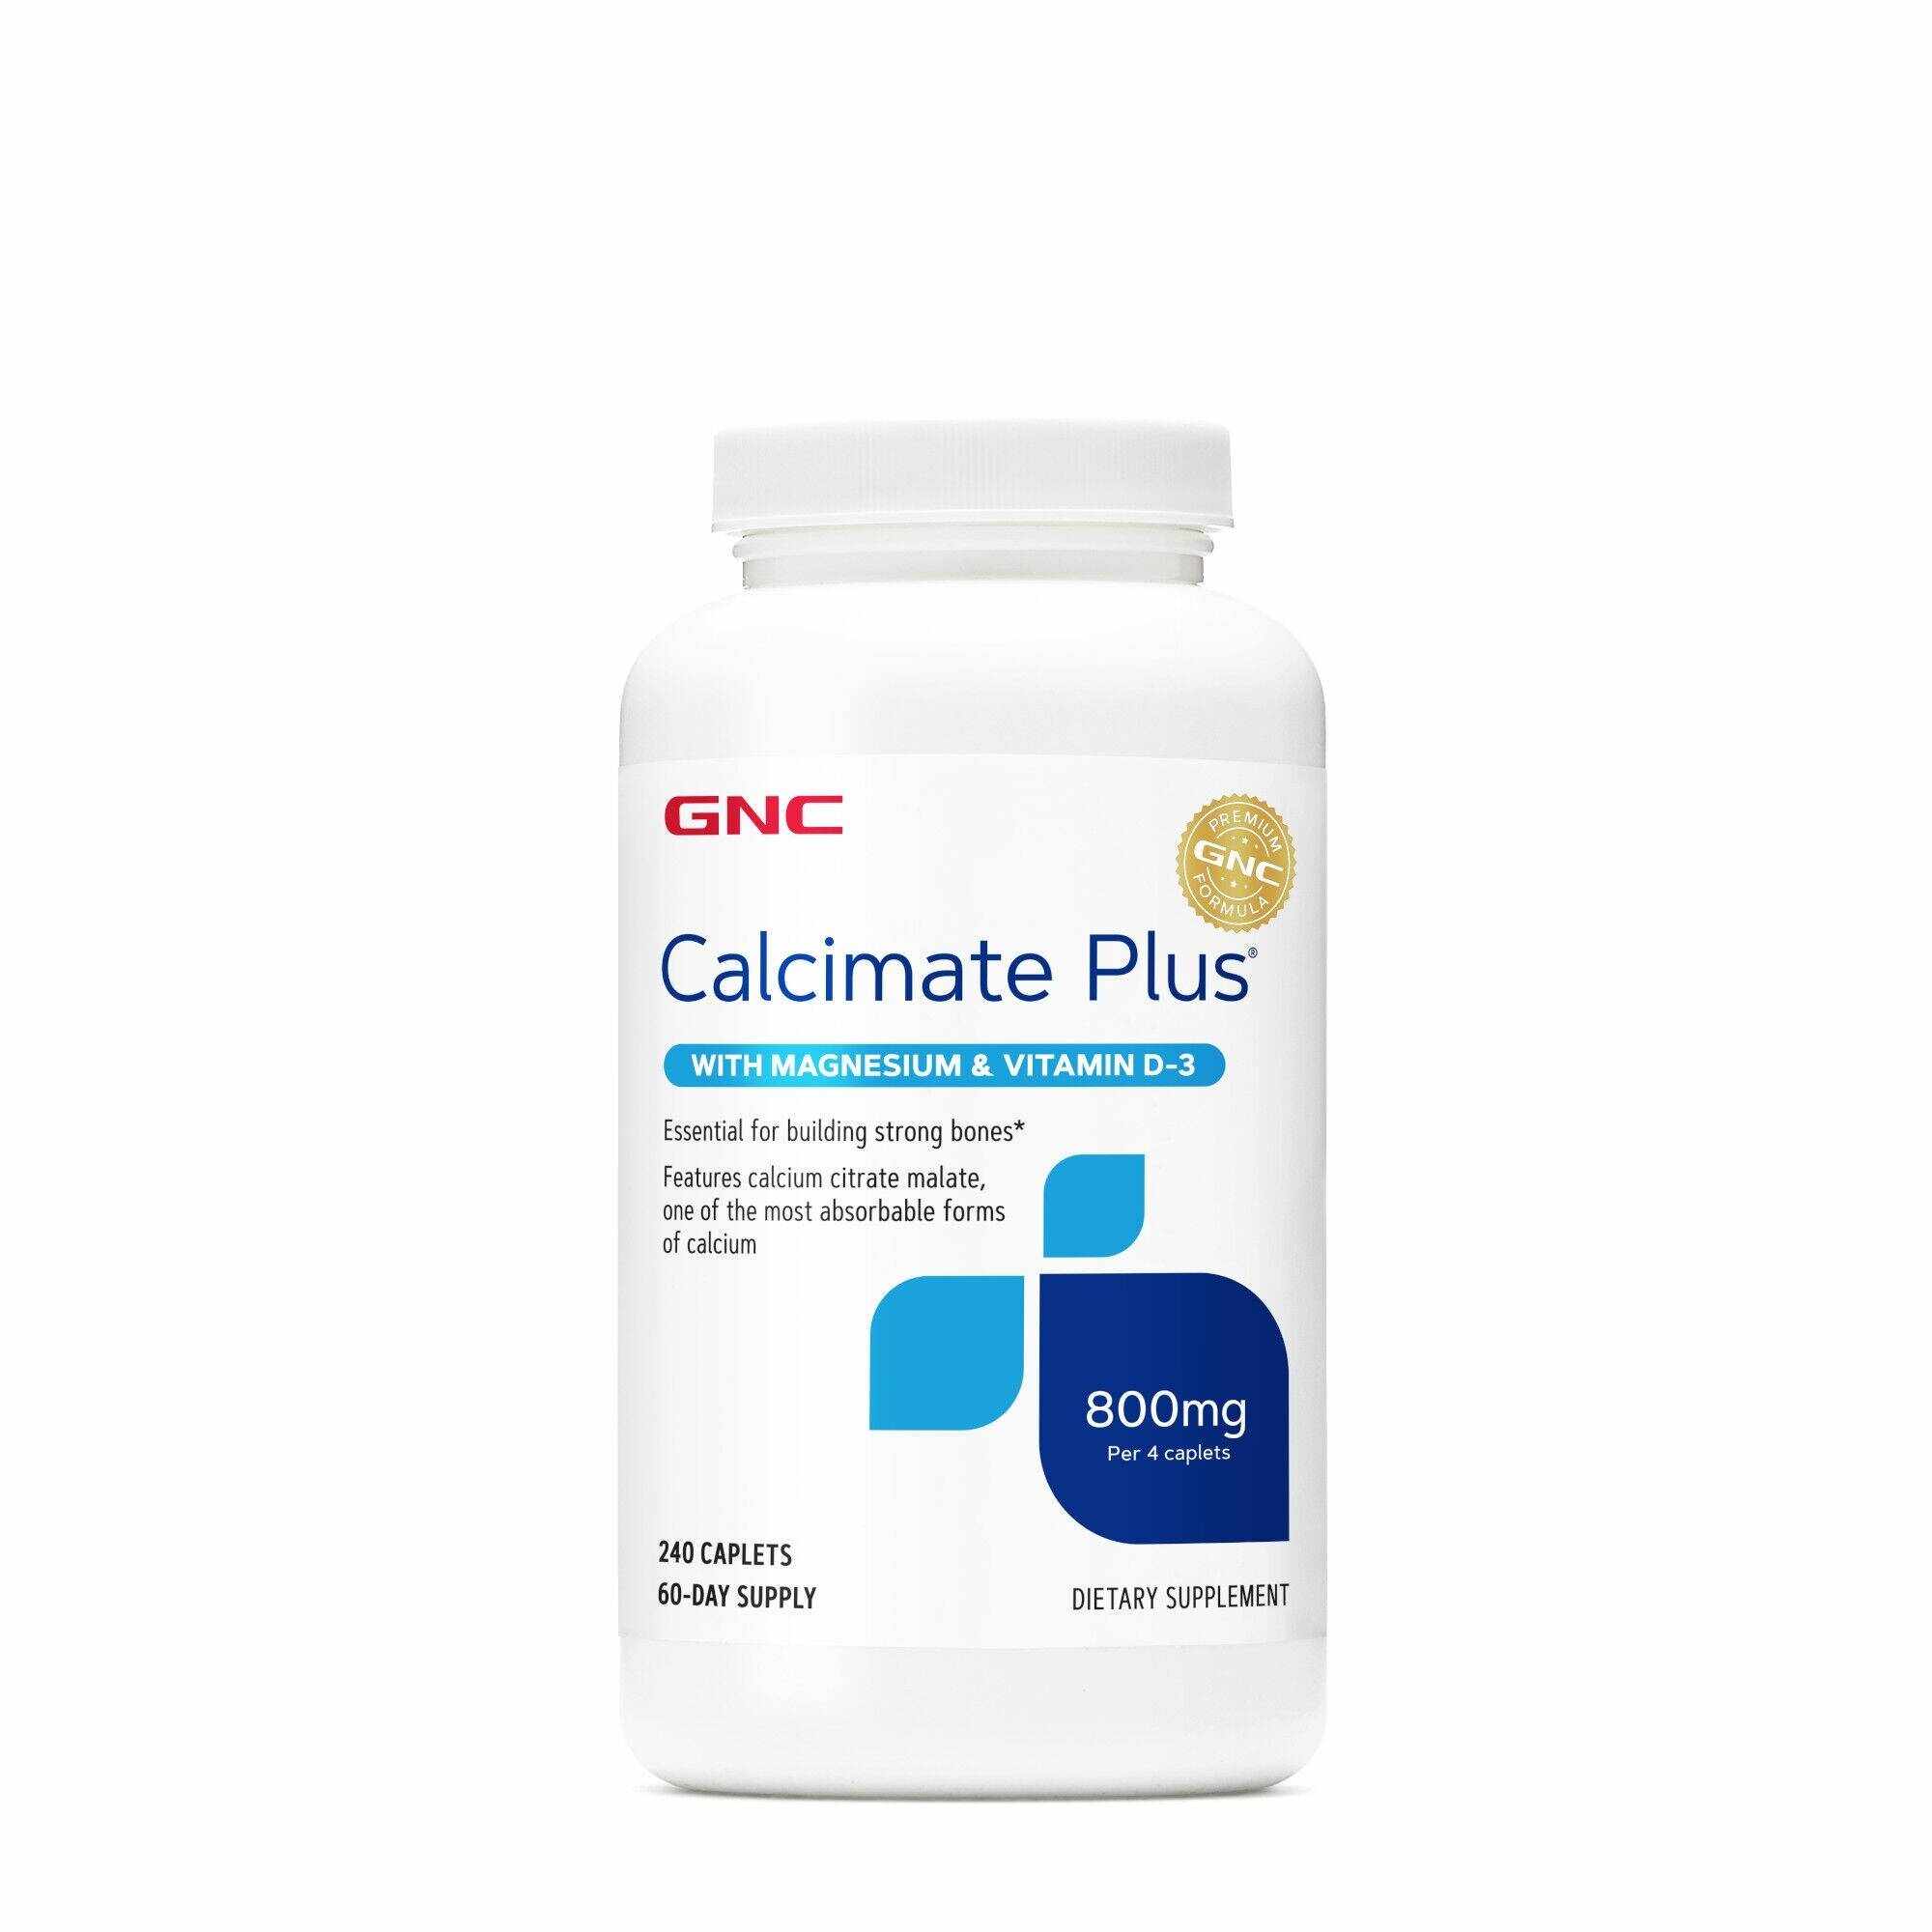 Calcimate Plus, Calciu 800mg cu magneziu si vitamina D-3, 240tbl - Gnc